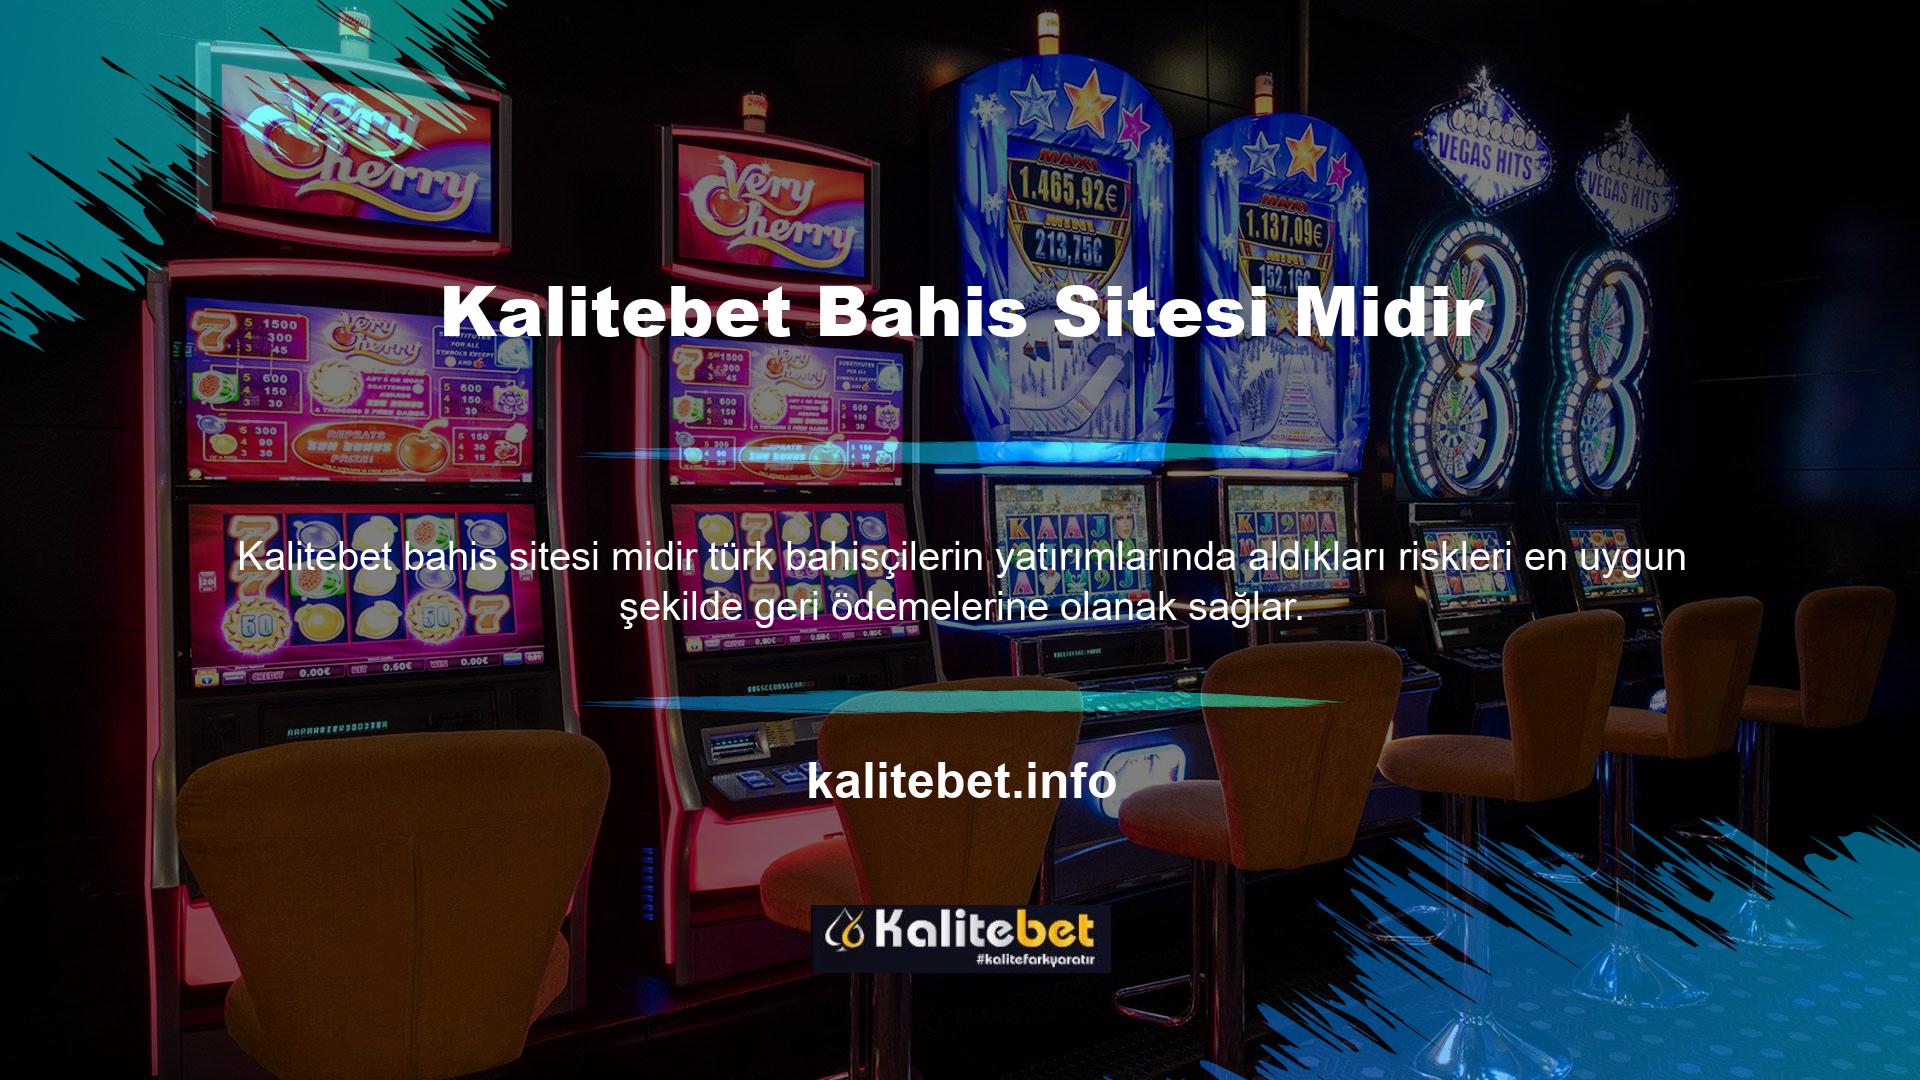 Kalitebet oyuncu olduğundan birçok oyun sağlayıcı da Kalitebet için yüksek olasılıklı kampanyalar oluşturmuştur